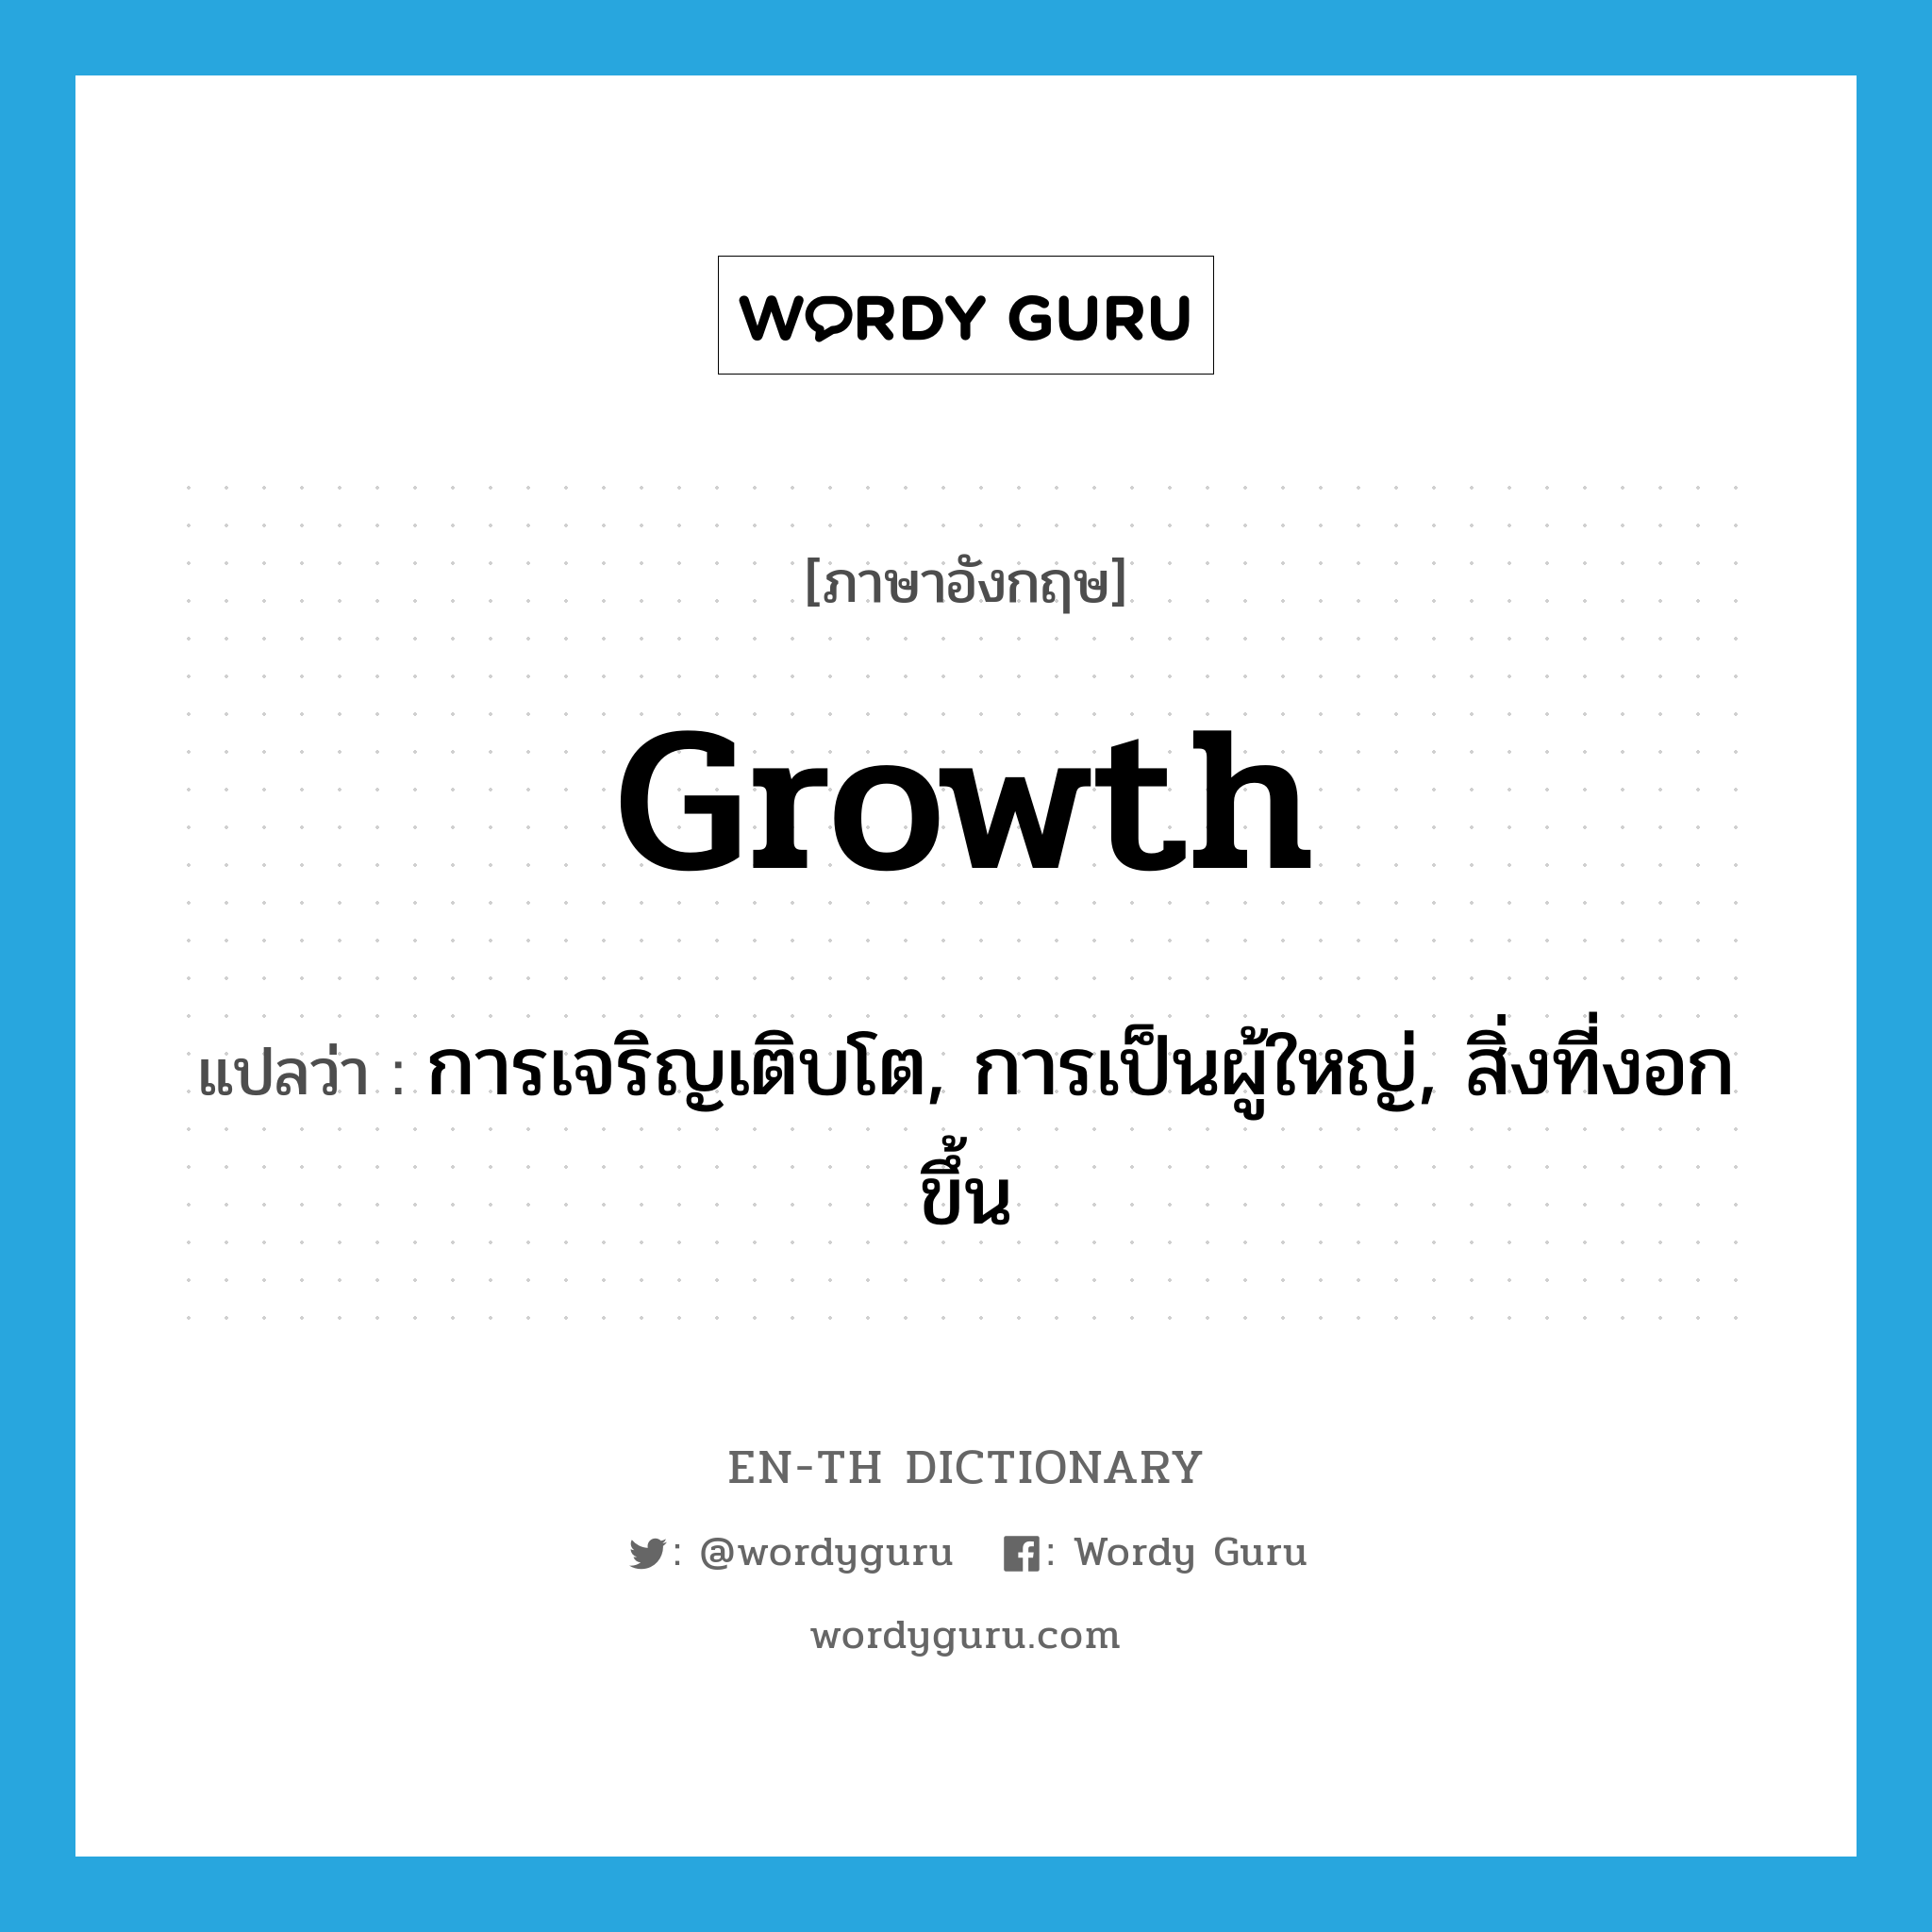 การเจริญเติบโต, การเป็นผู้ใหญ่, สิ่งที่งอกขึ้น ภาษาอังกฤษ?, คำศัพท์ภาษาอังกฤษ การเจริญเติบโต, การเป็นผู้ใหญ่, สิ่งที่งอกขึ้น แปลว่า growth ประเภท N หมวด N